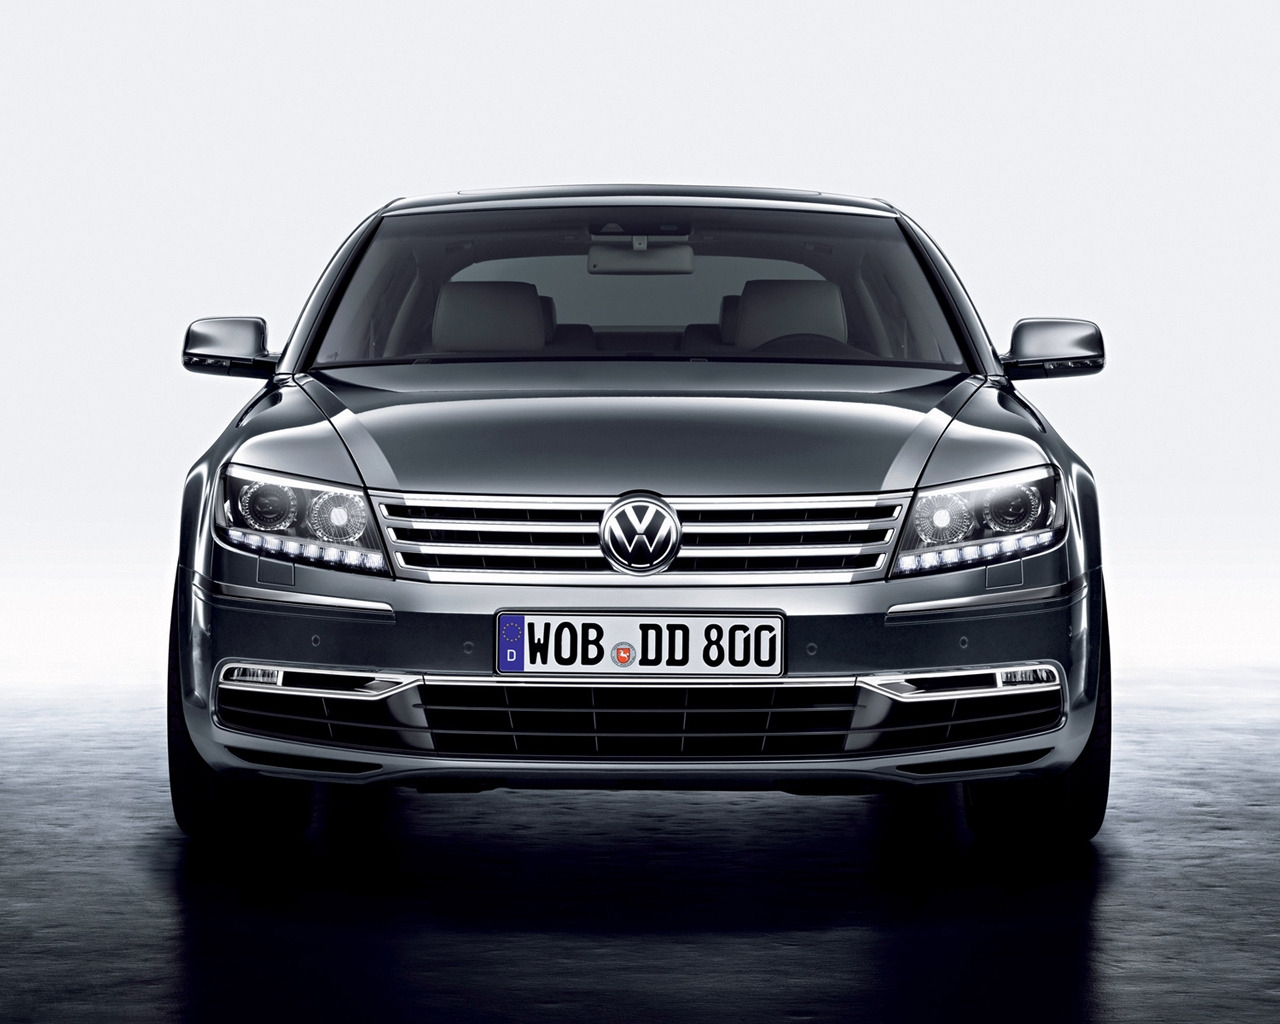 Volkswagen Phaeton Front for 1280 x 1024 resolution